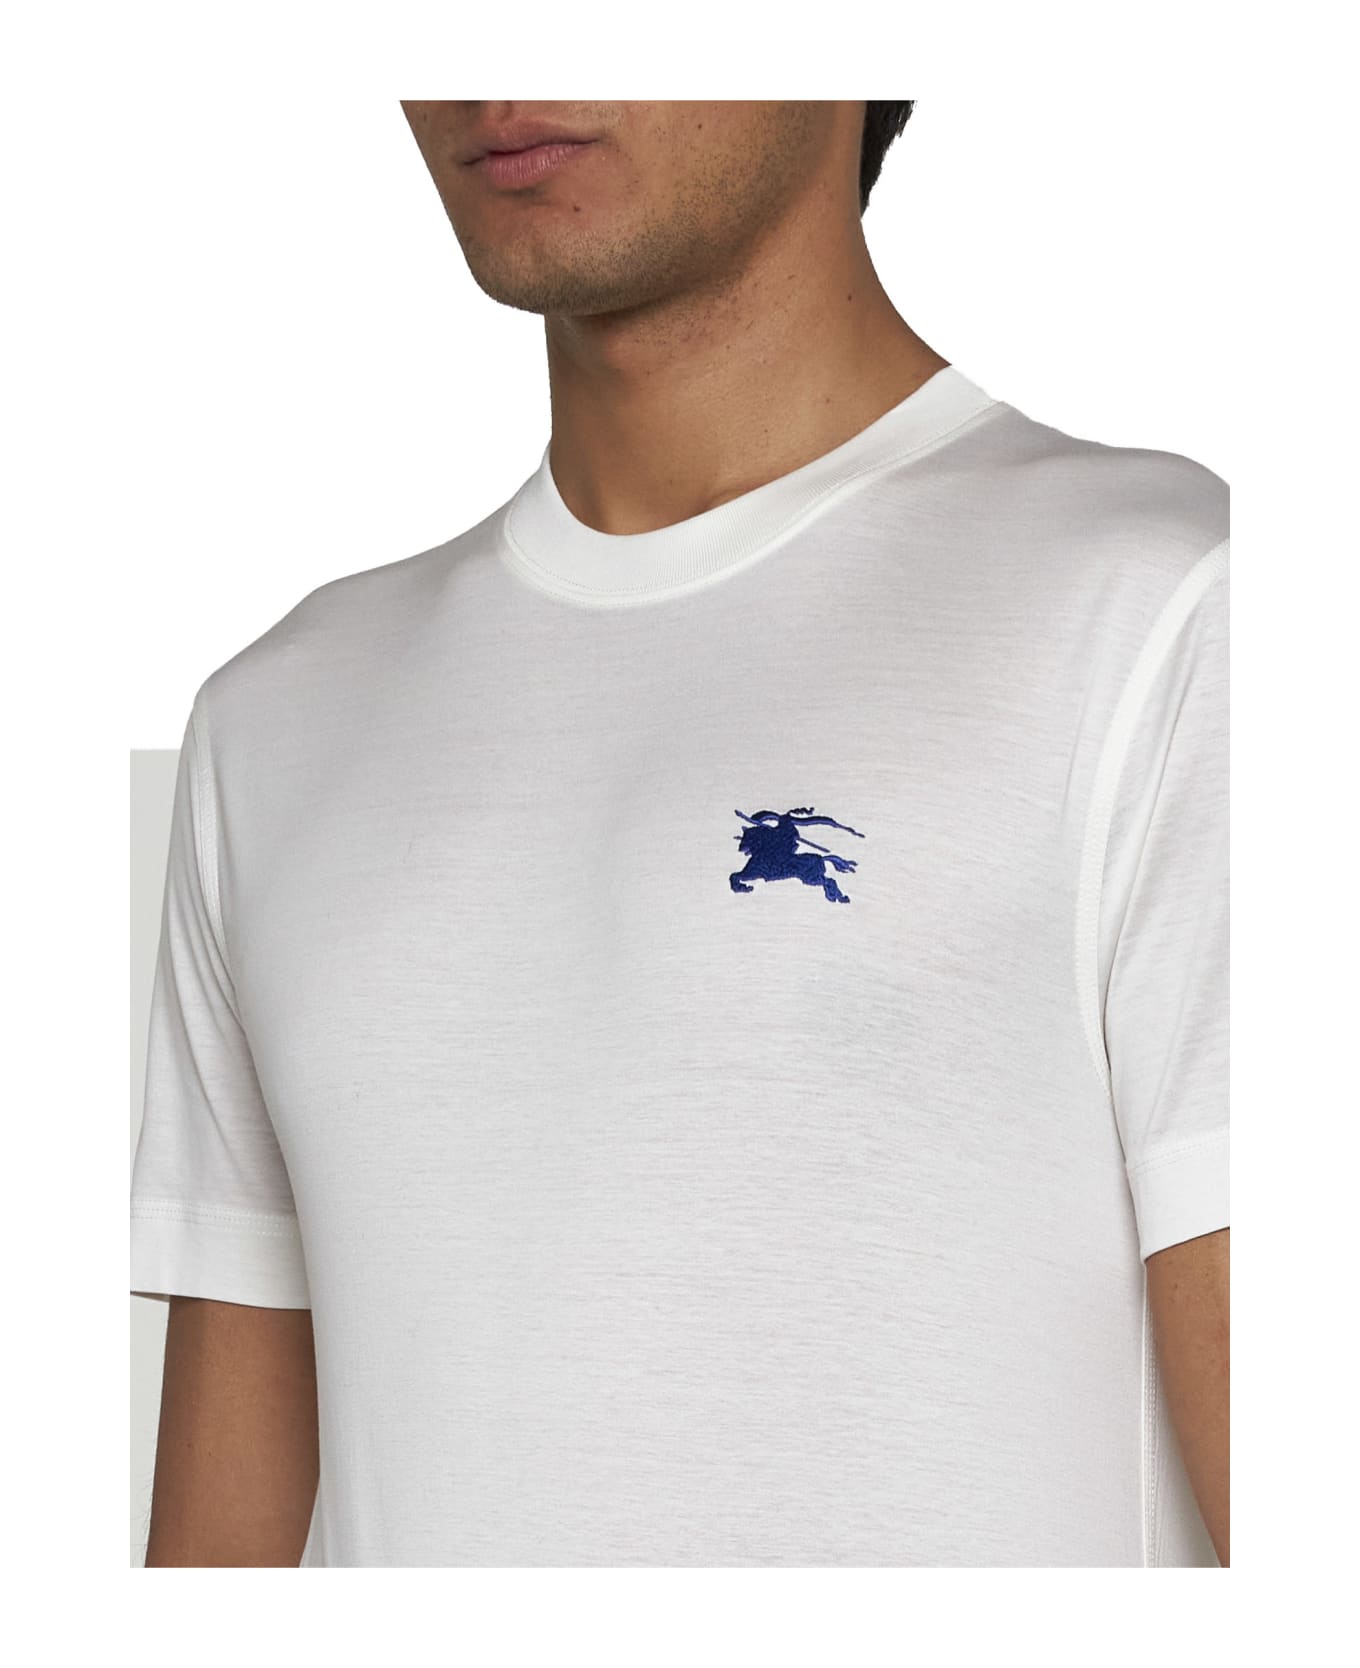 Burberry T-shirt - Salt シャツ